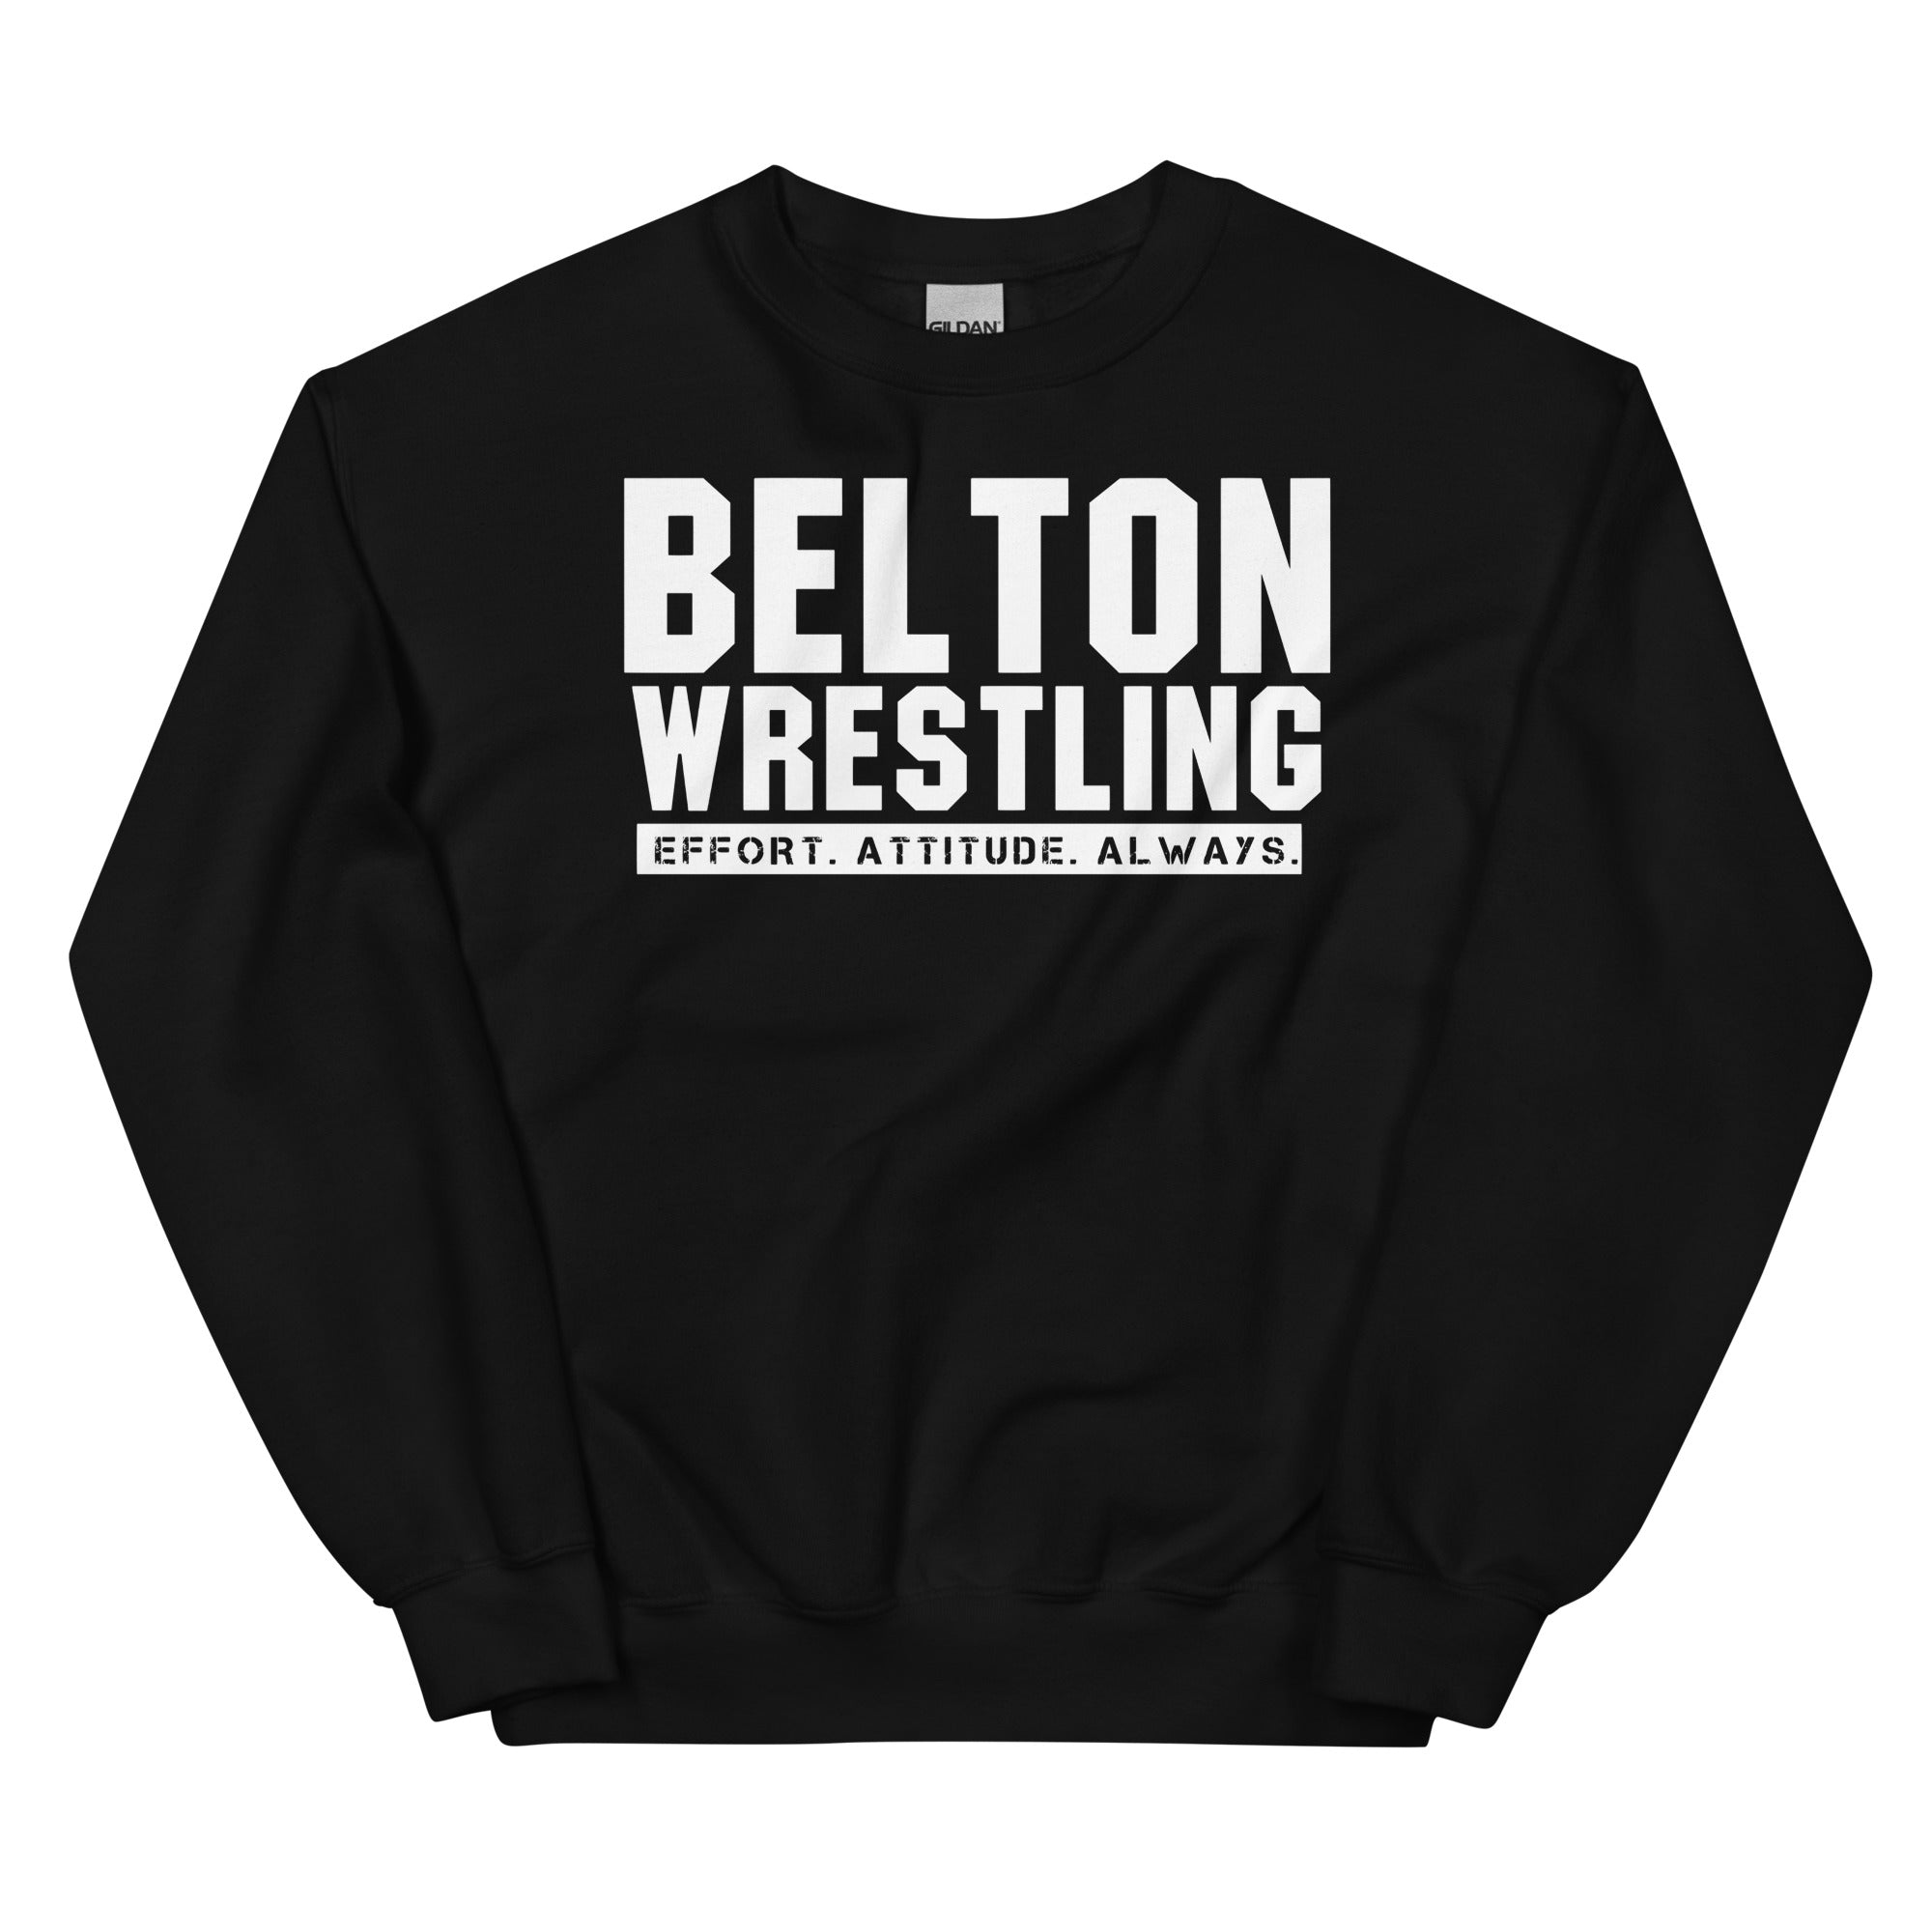 Belton High School Unisex Crew Neck Sweatshirt